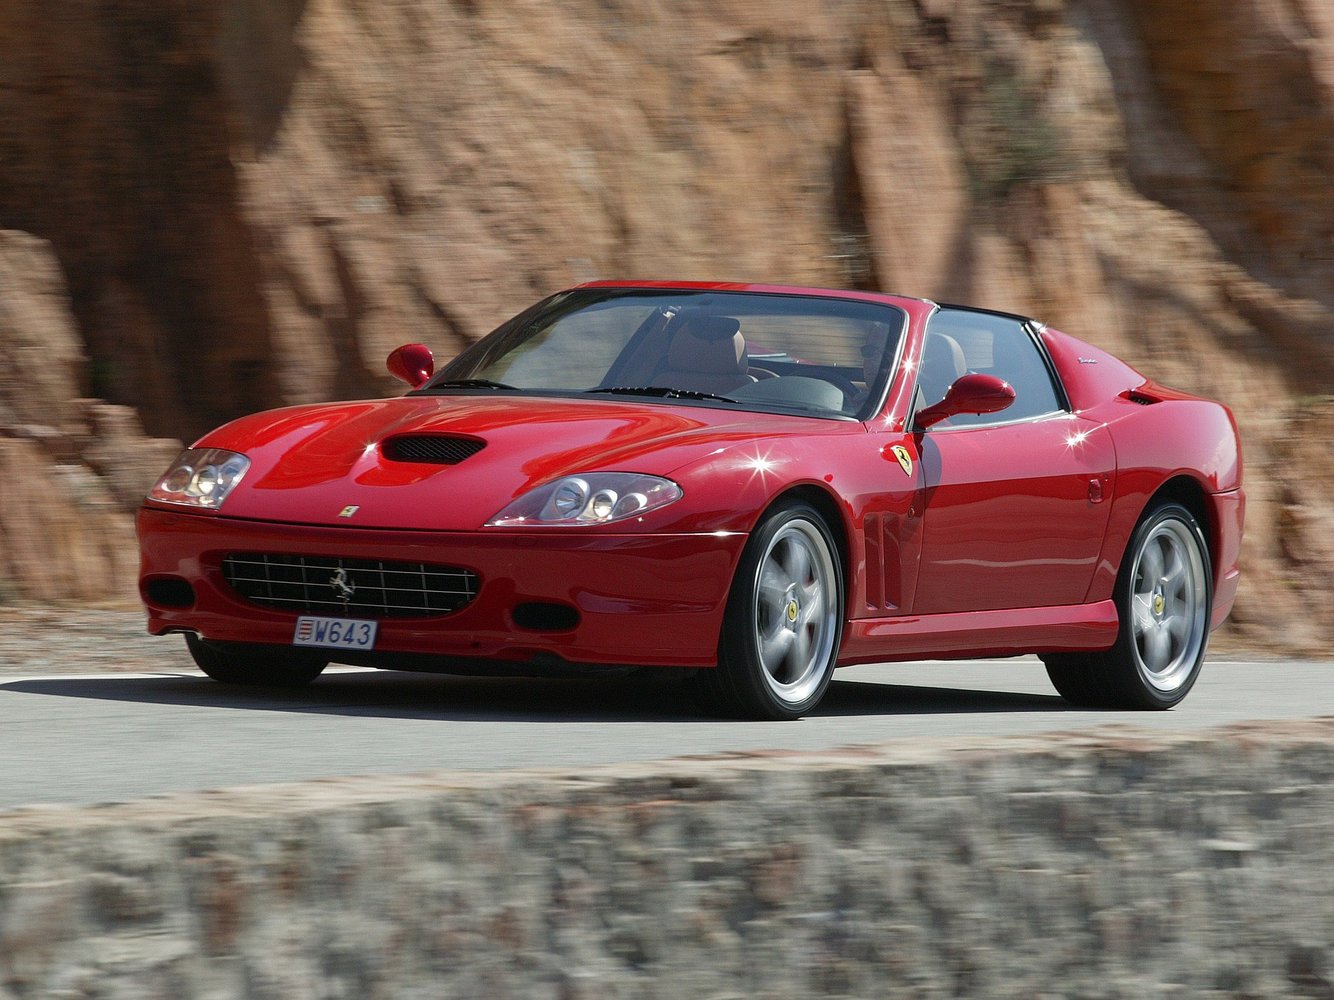 Ferrari 575M 2002 - 2006